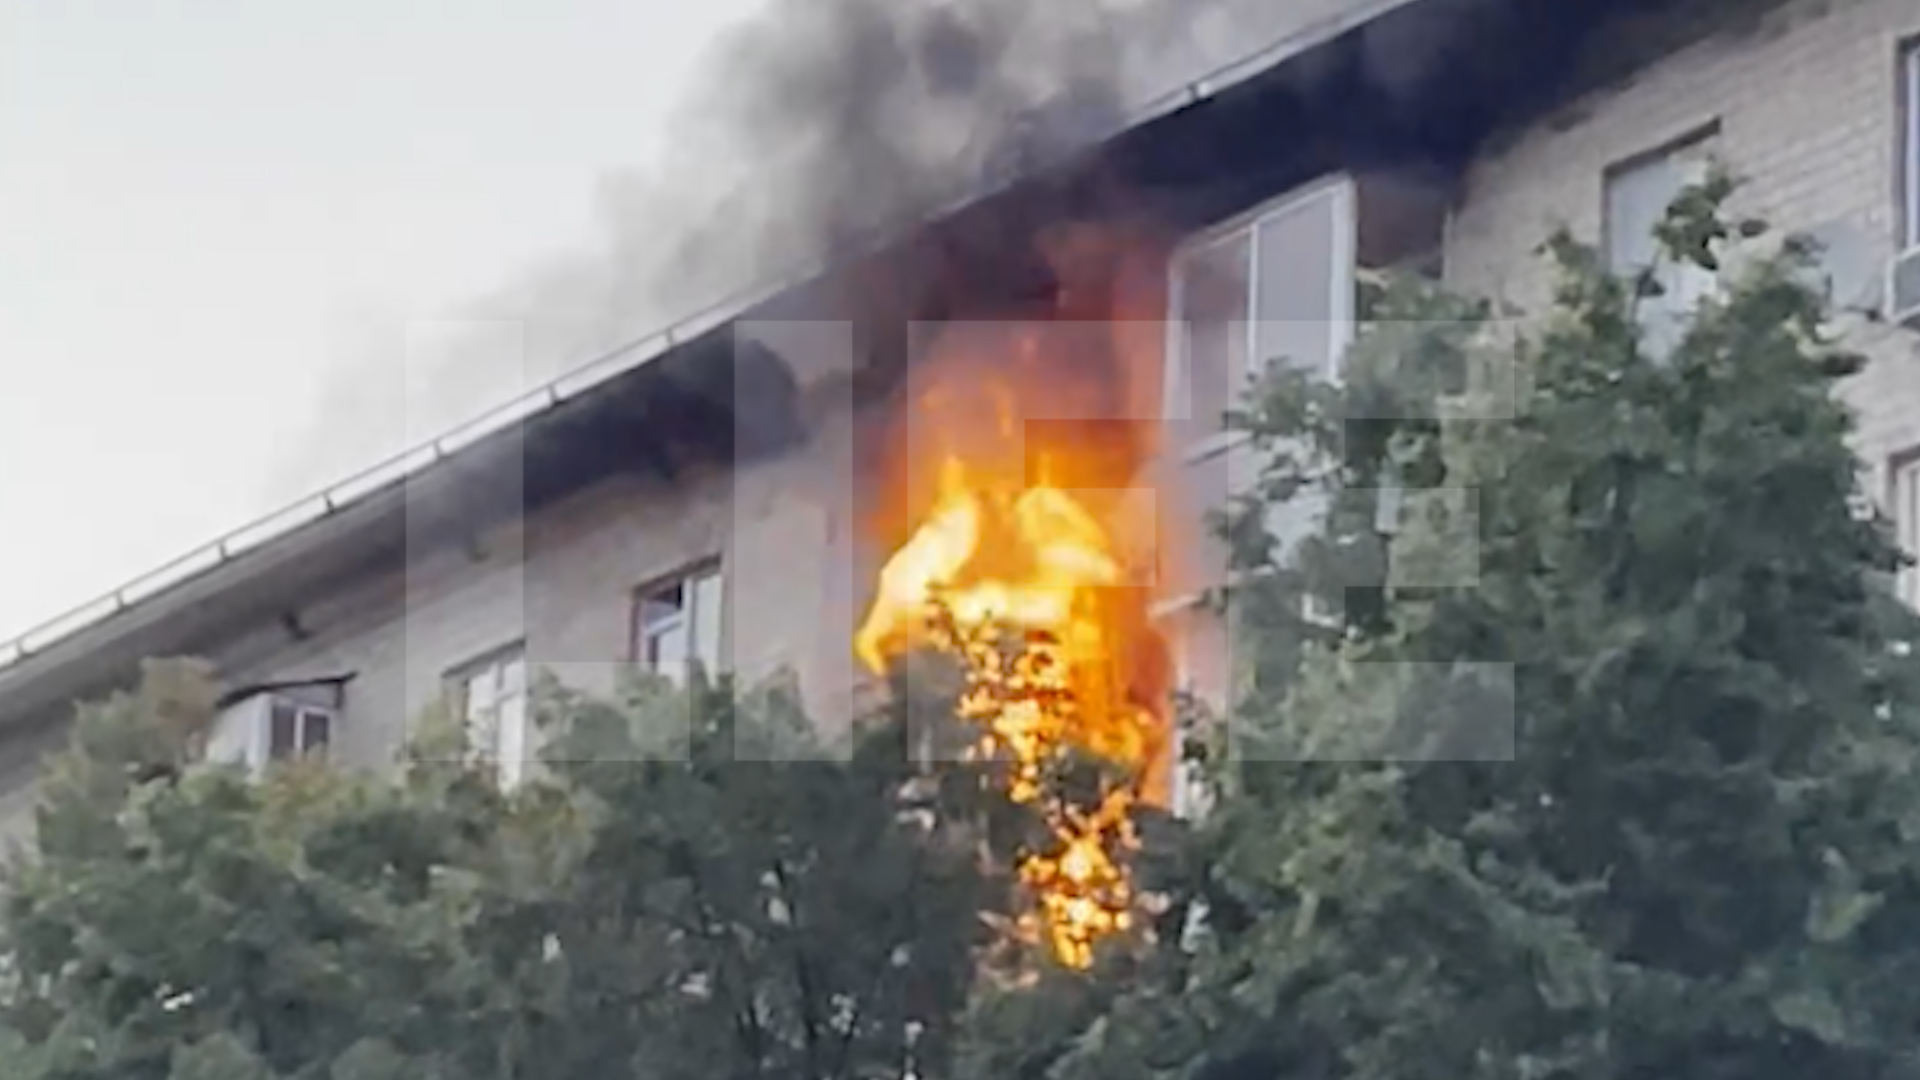 Лайф публикует видео с места пожара на проспекте Вернадского, где погиб человек